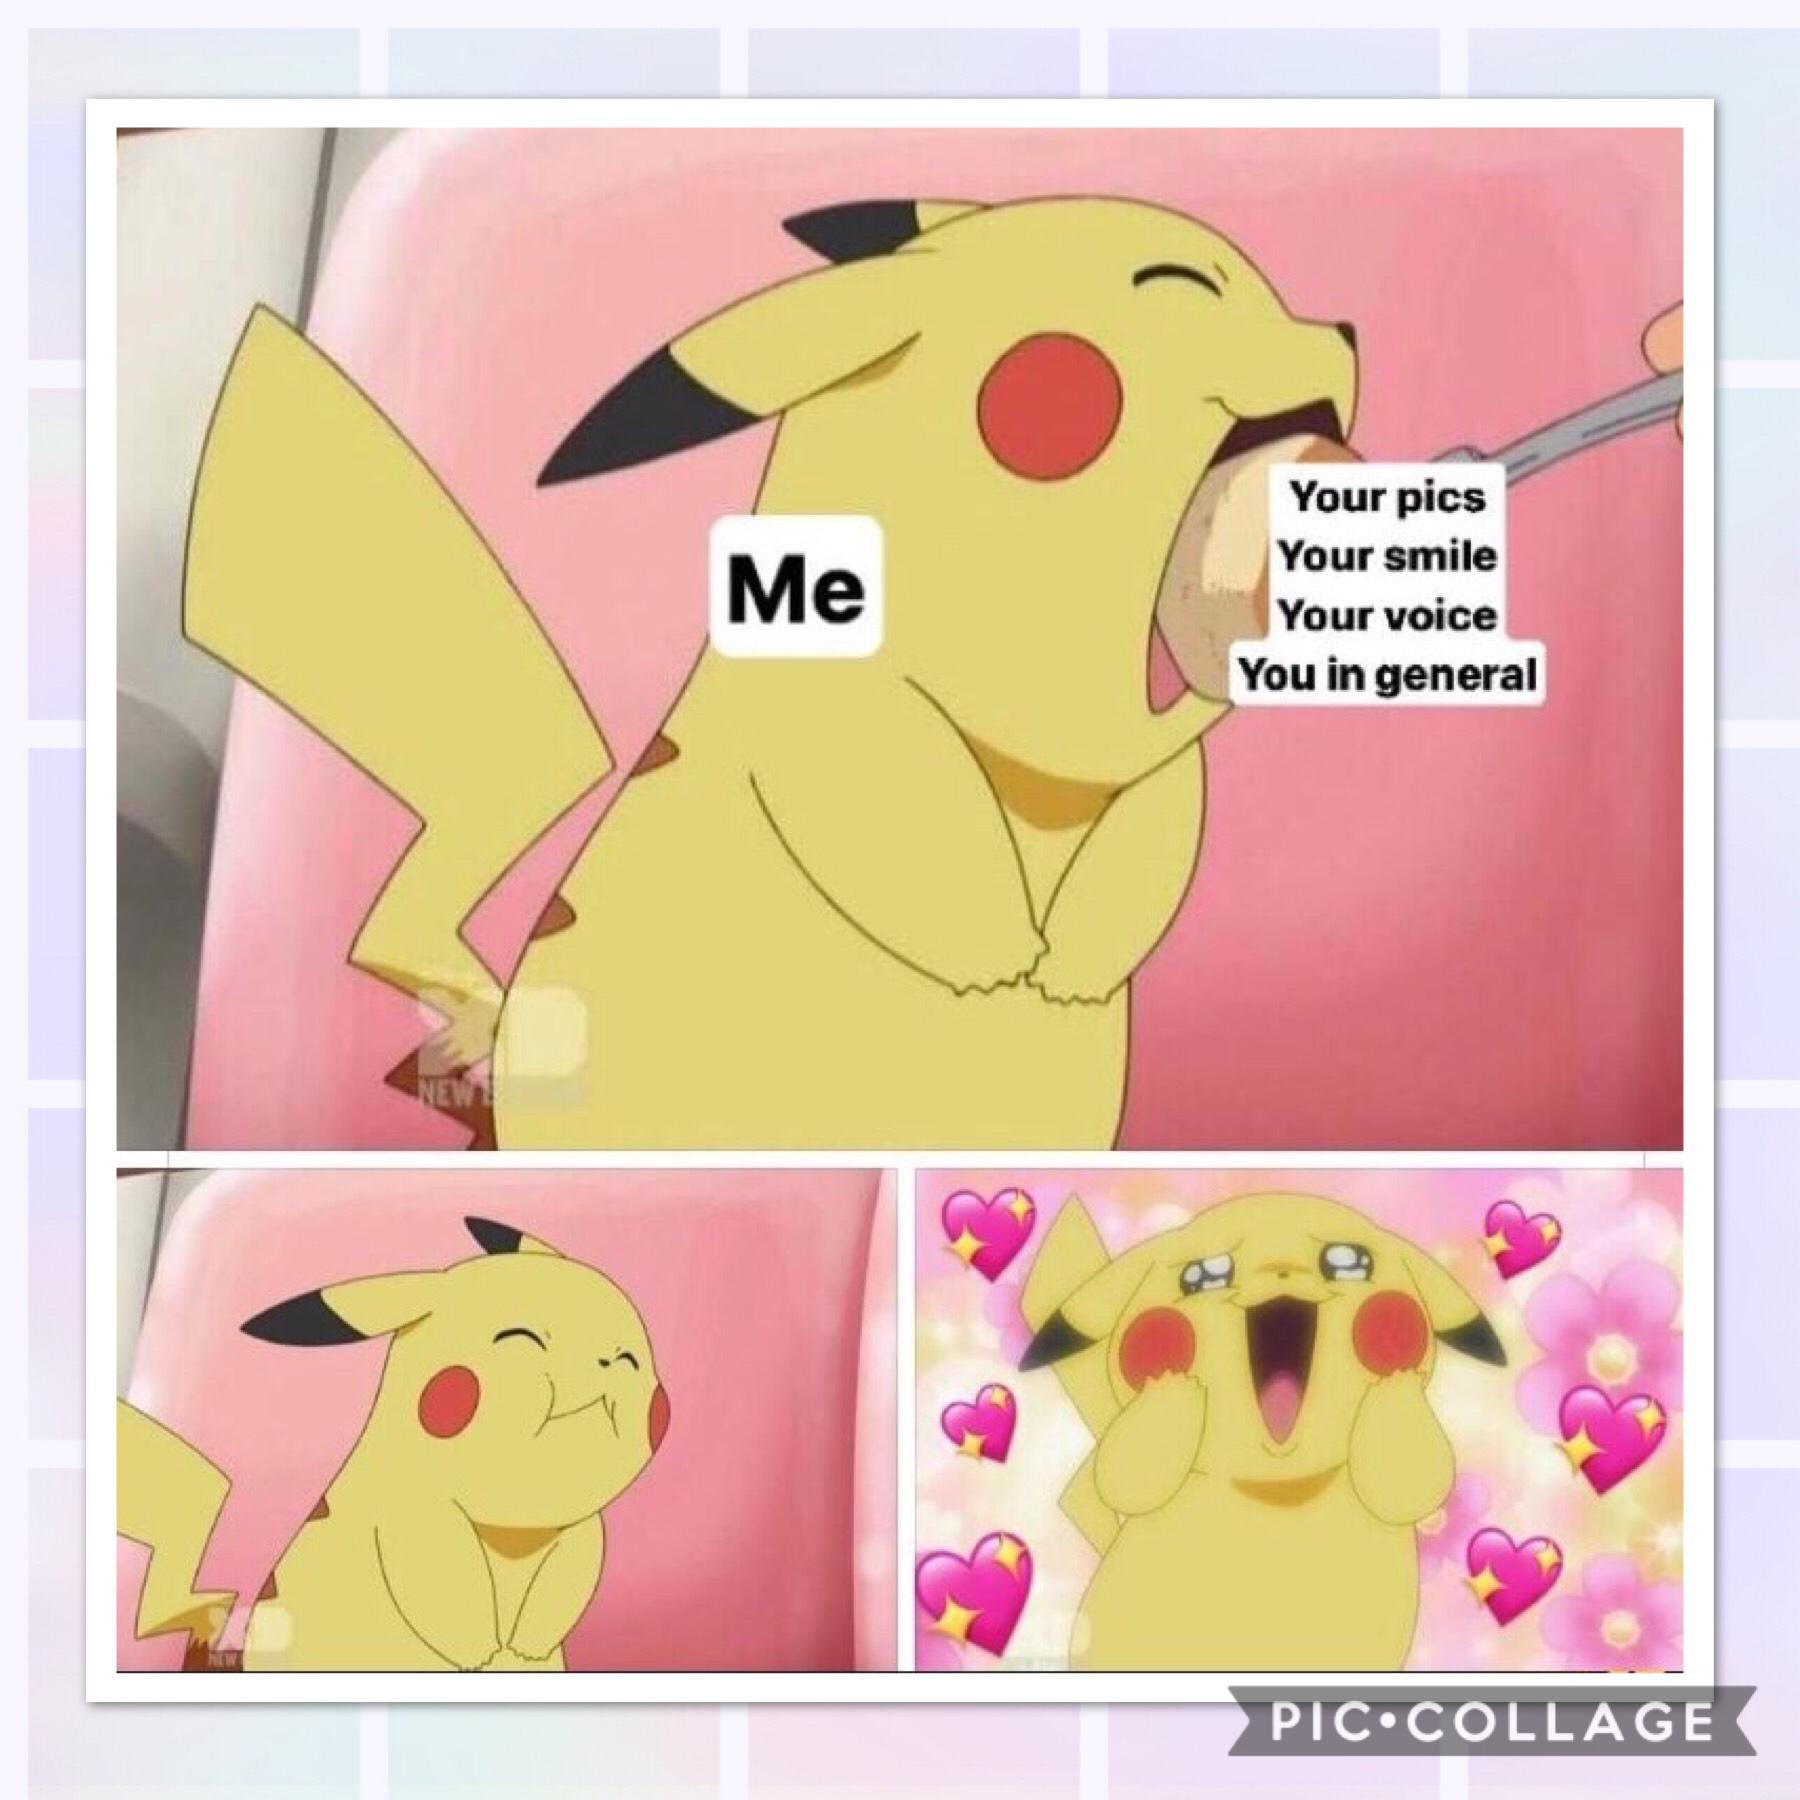 *yall i really like pikachu